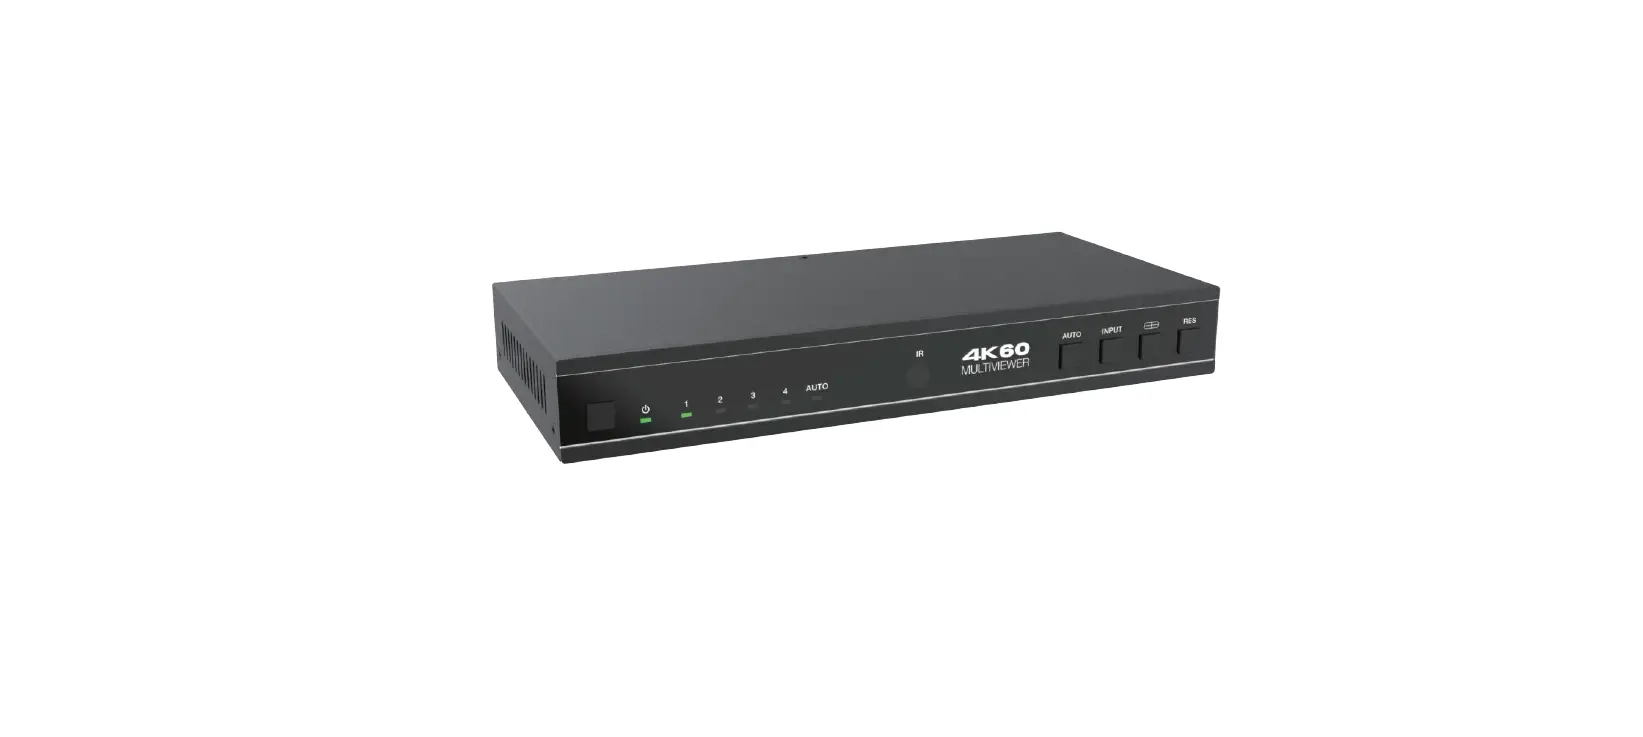 4K60 4×1 Multiviewer Seamless UHD Video Switcher